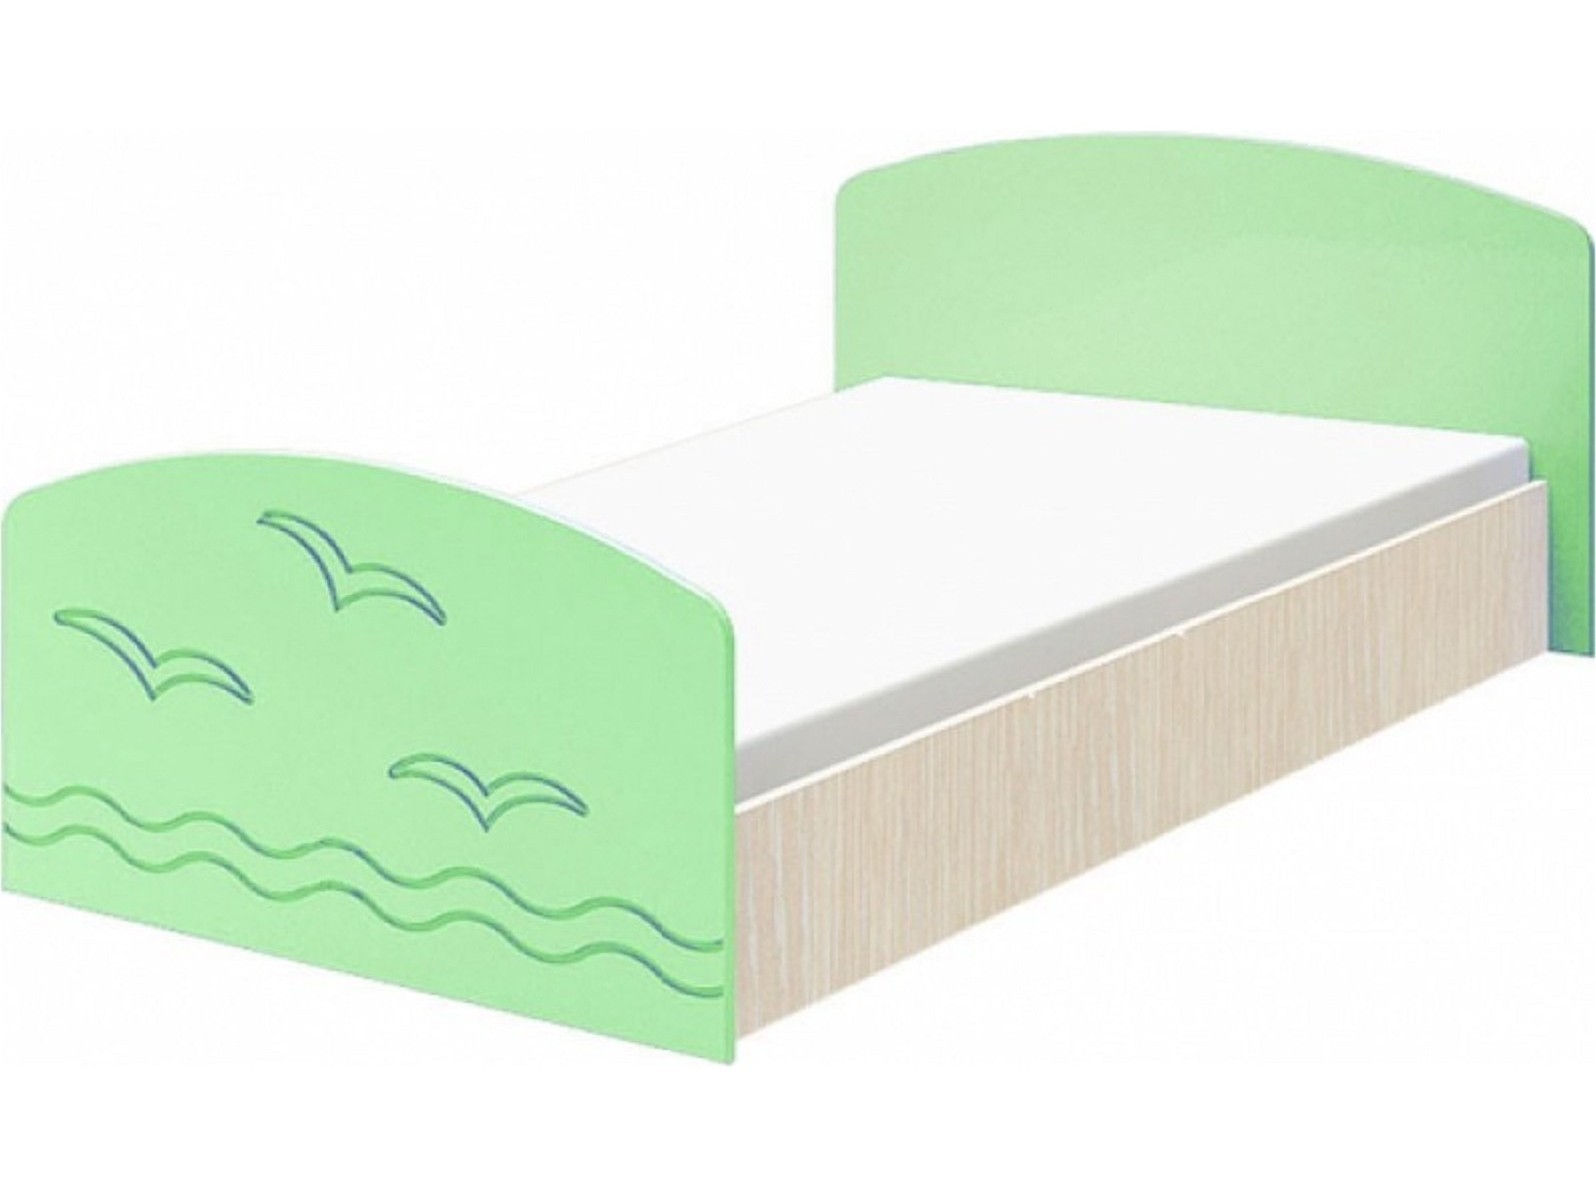 Юниор-2 Детская кровать 80, матовый (Салатовый, Дуб белёный) Зеленый, МДФ, ЛДСП юниор 2 стенка матовый салатовый дуб белёный зеленый мдф лдсп